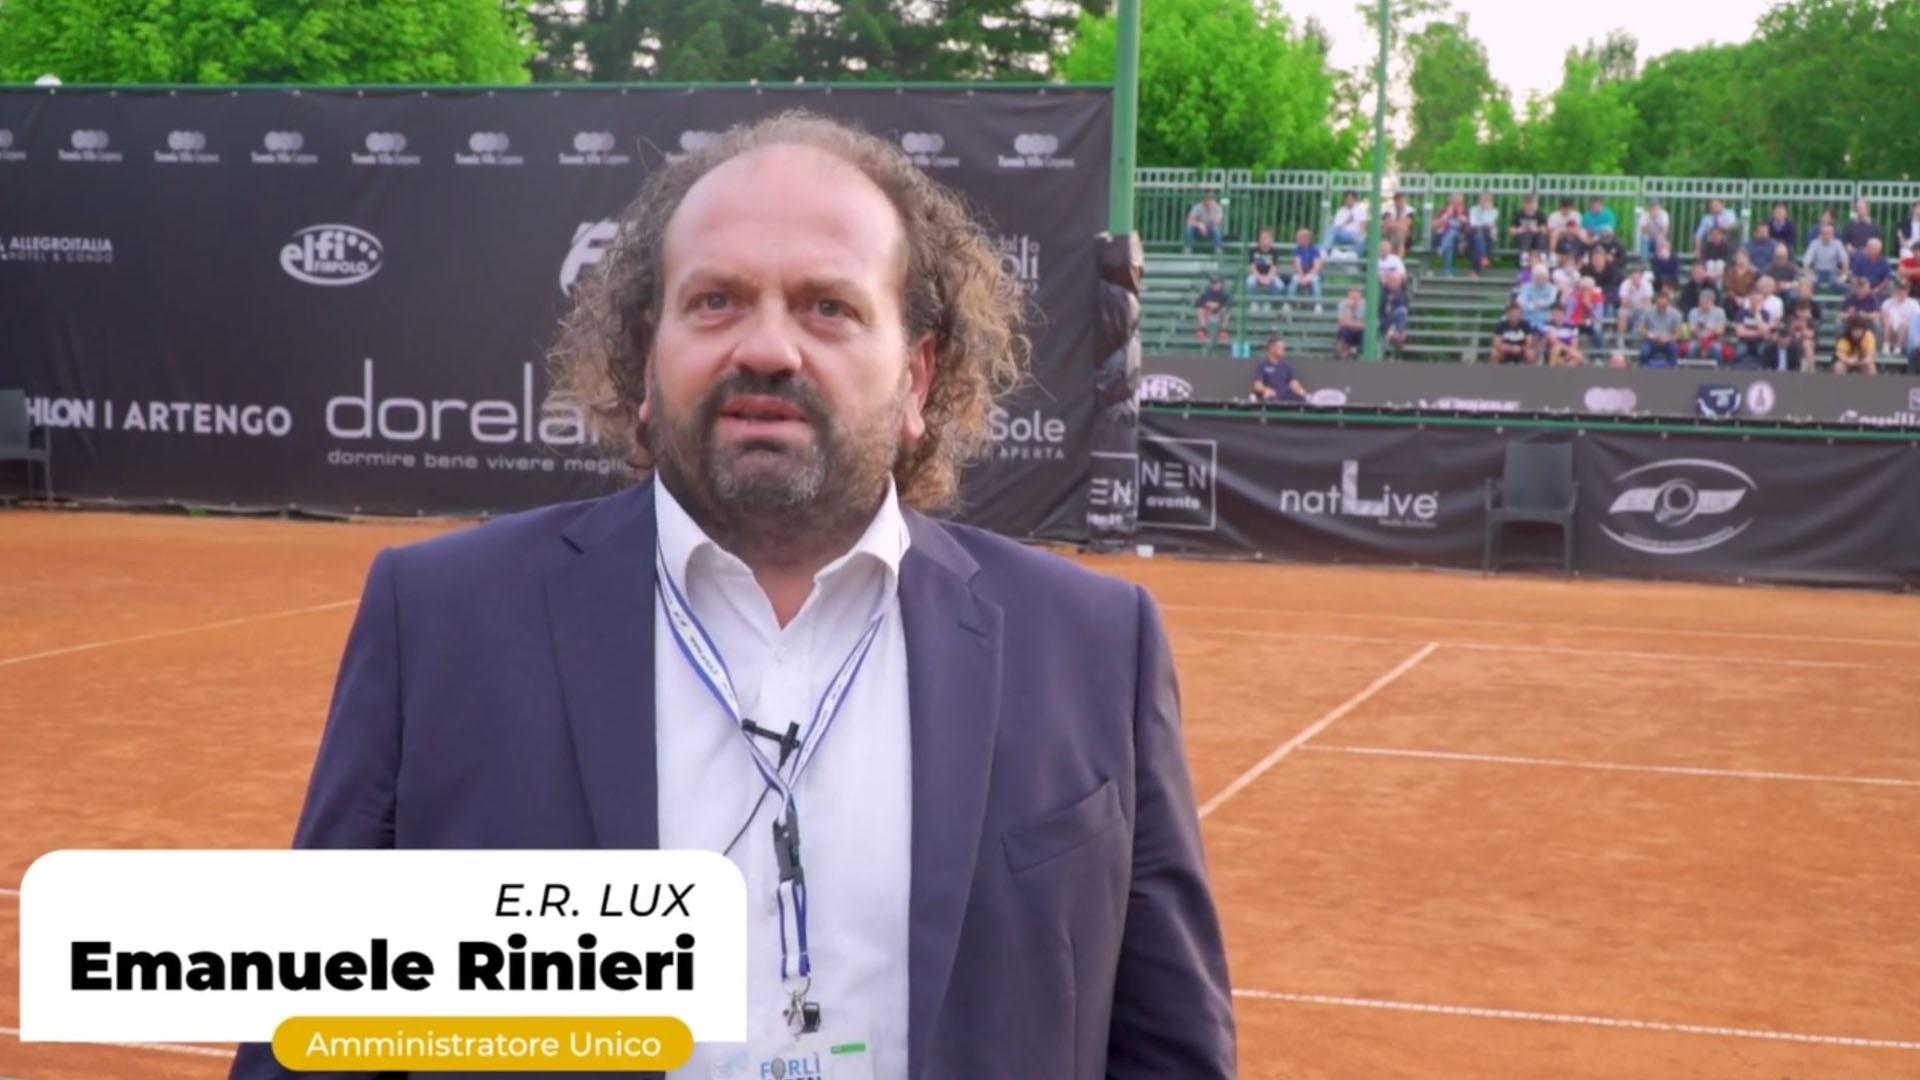 E.R. Lux e Circolo Villa Carpena, un patto che si rinnova nel nome del tennis